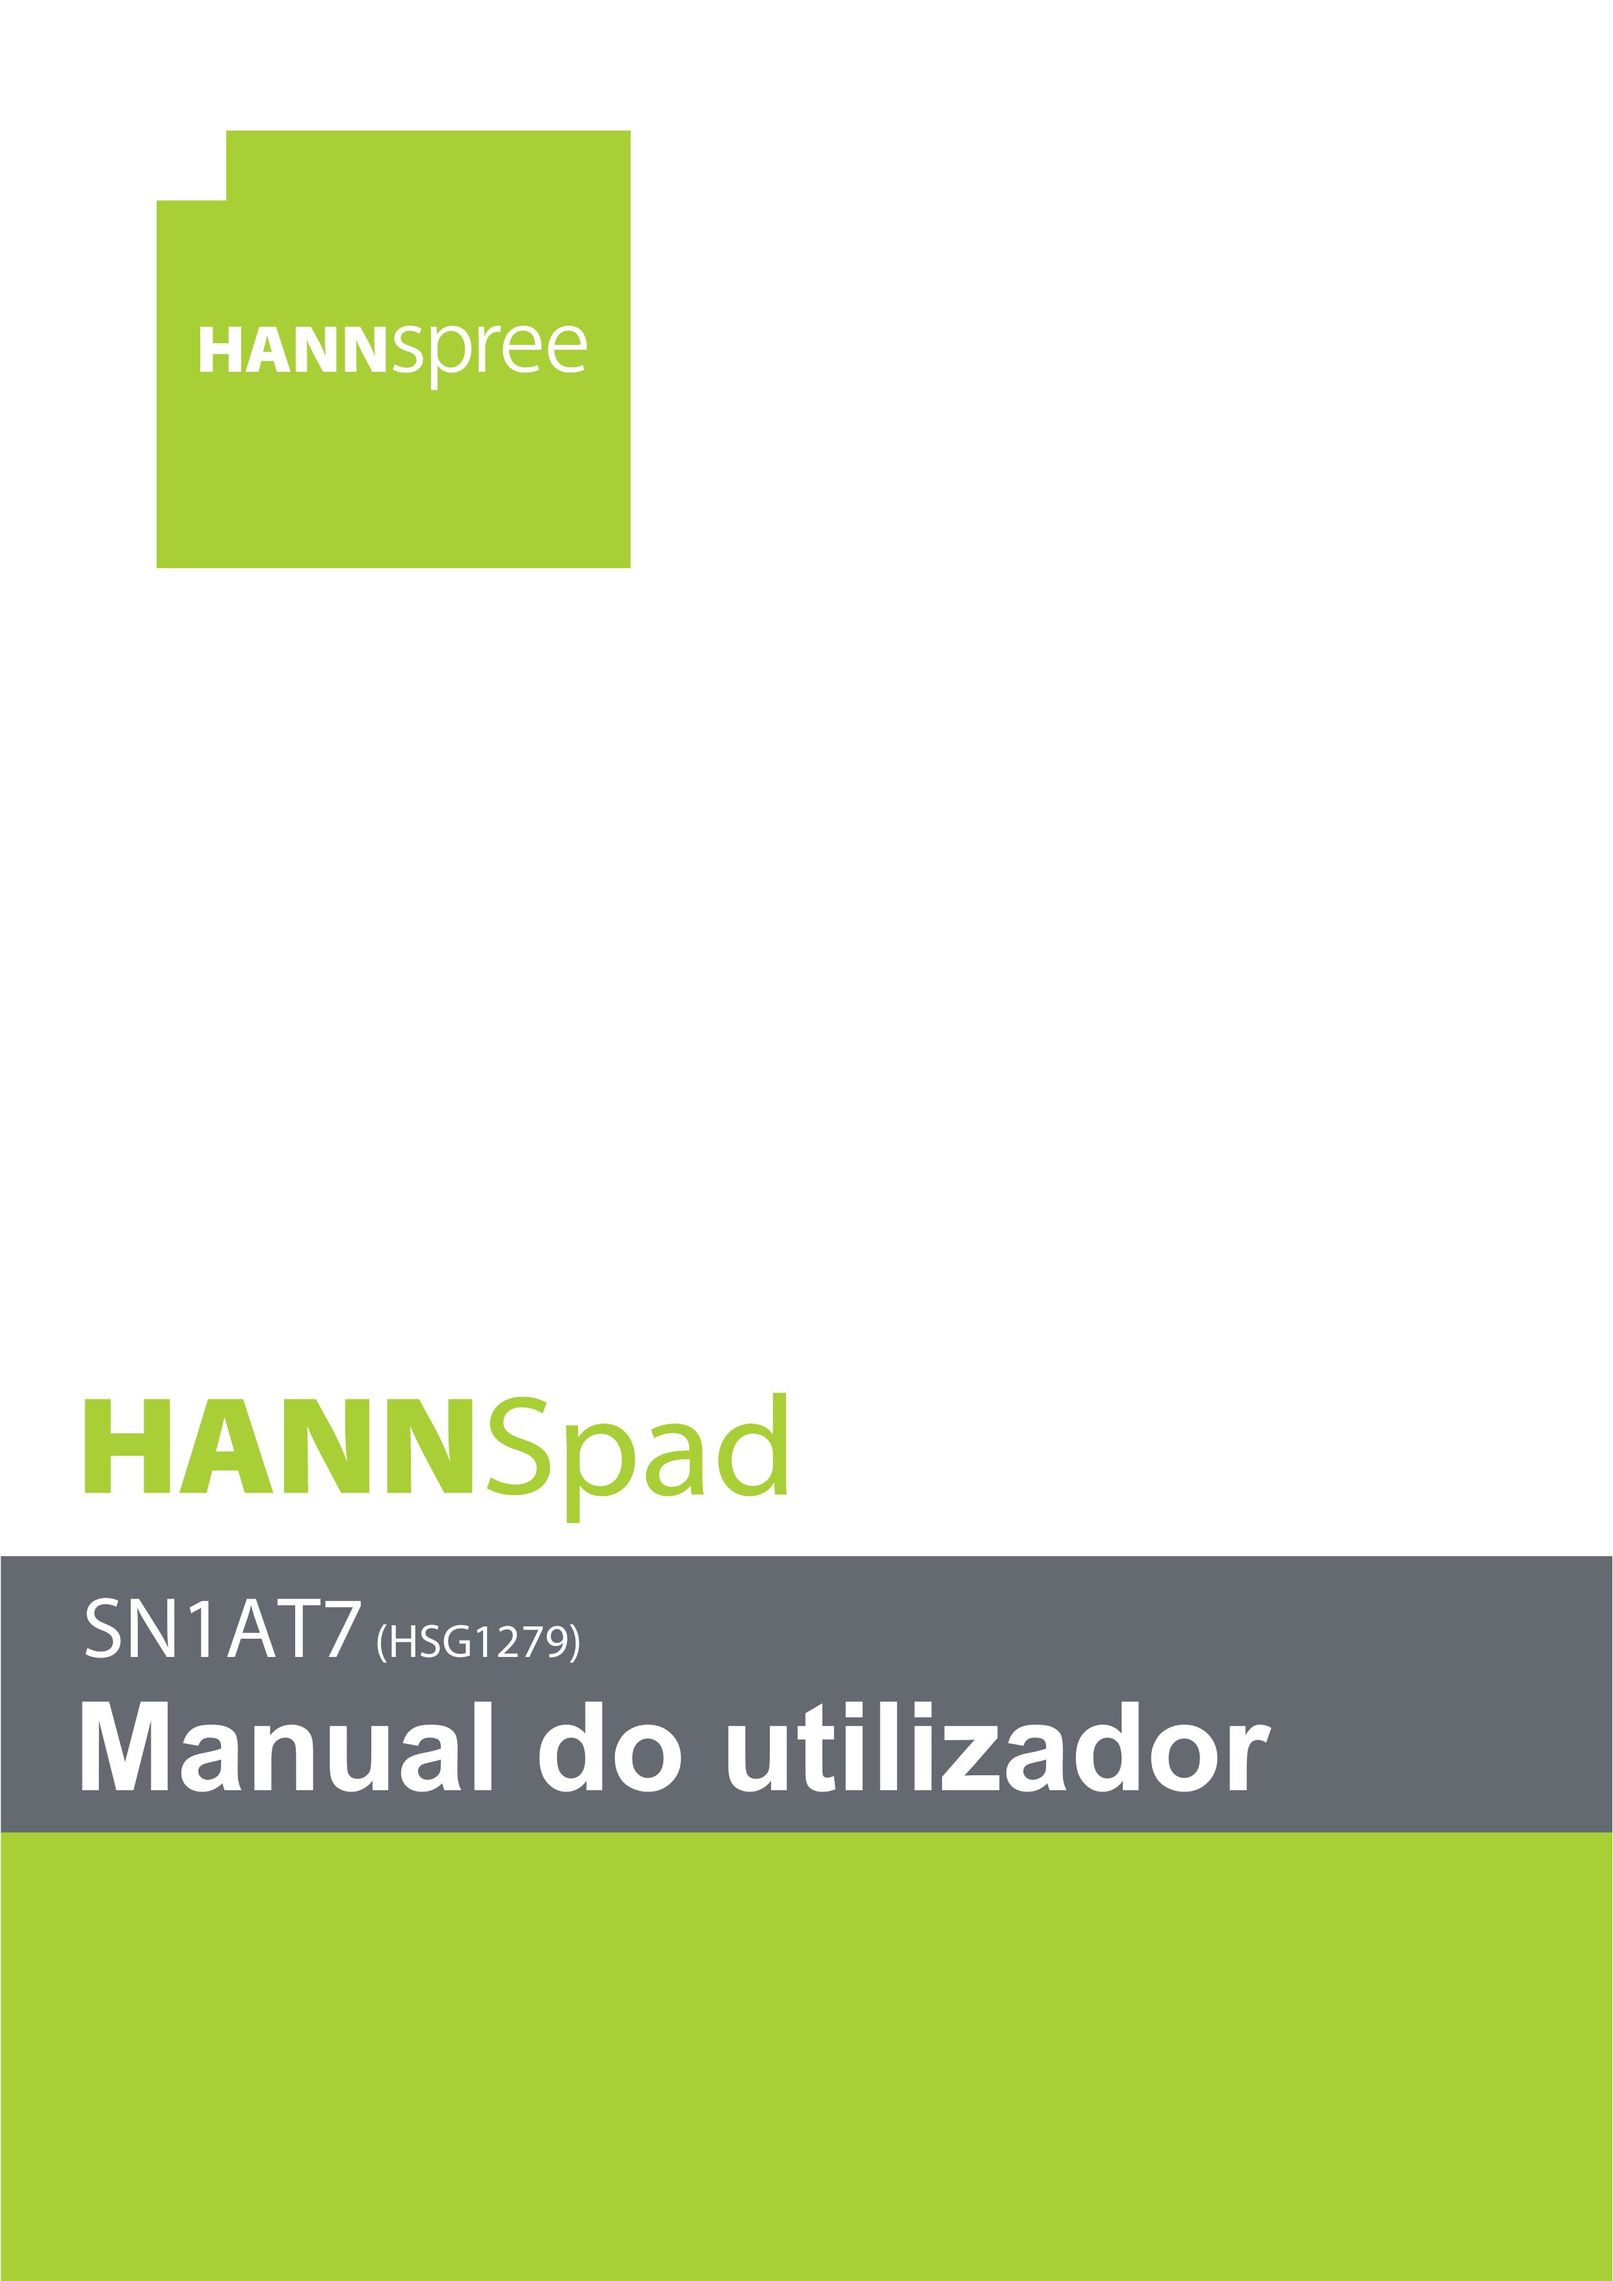 HANNspree SN1AT7 (HSG1279) Tablet User Manual